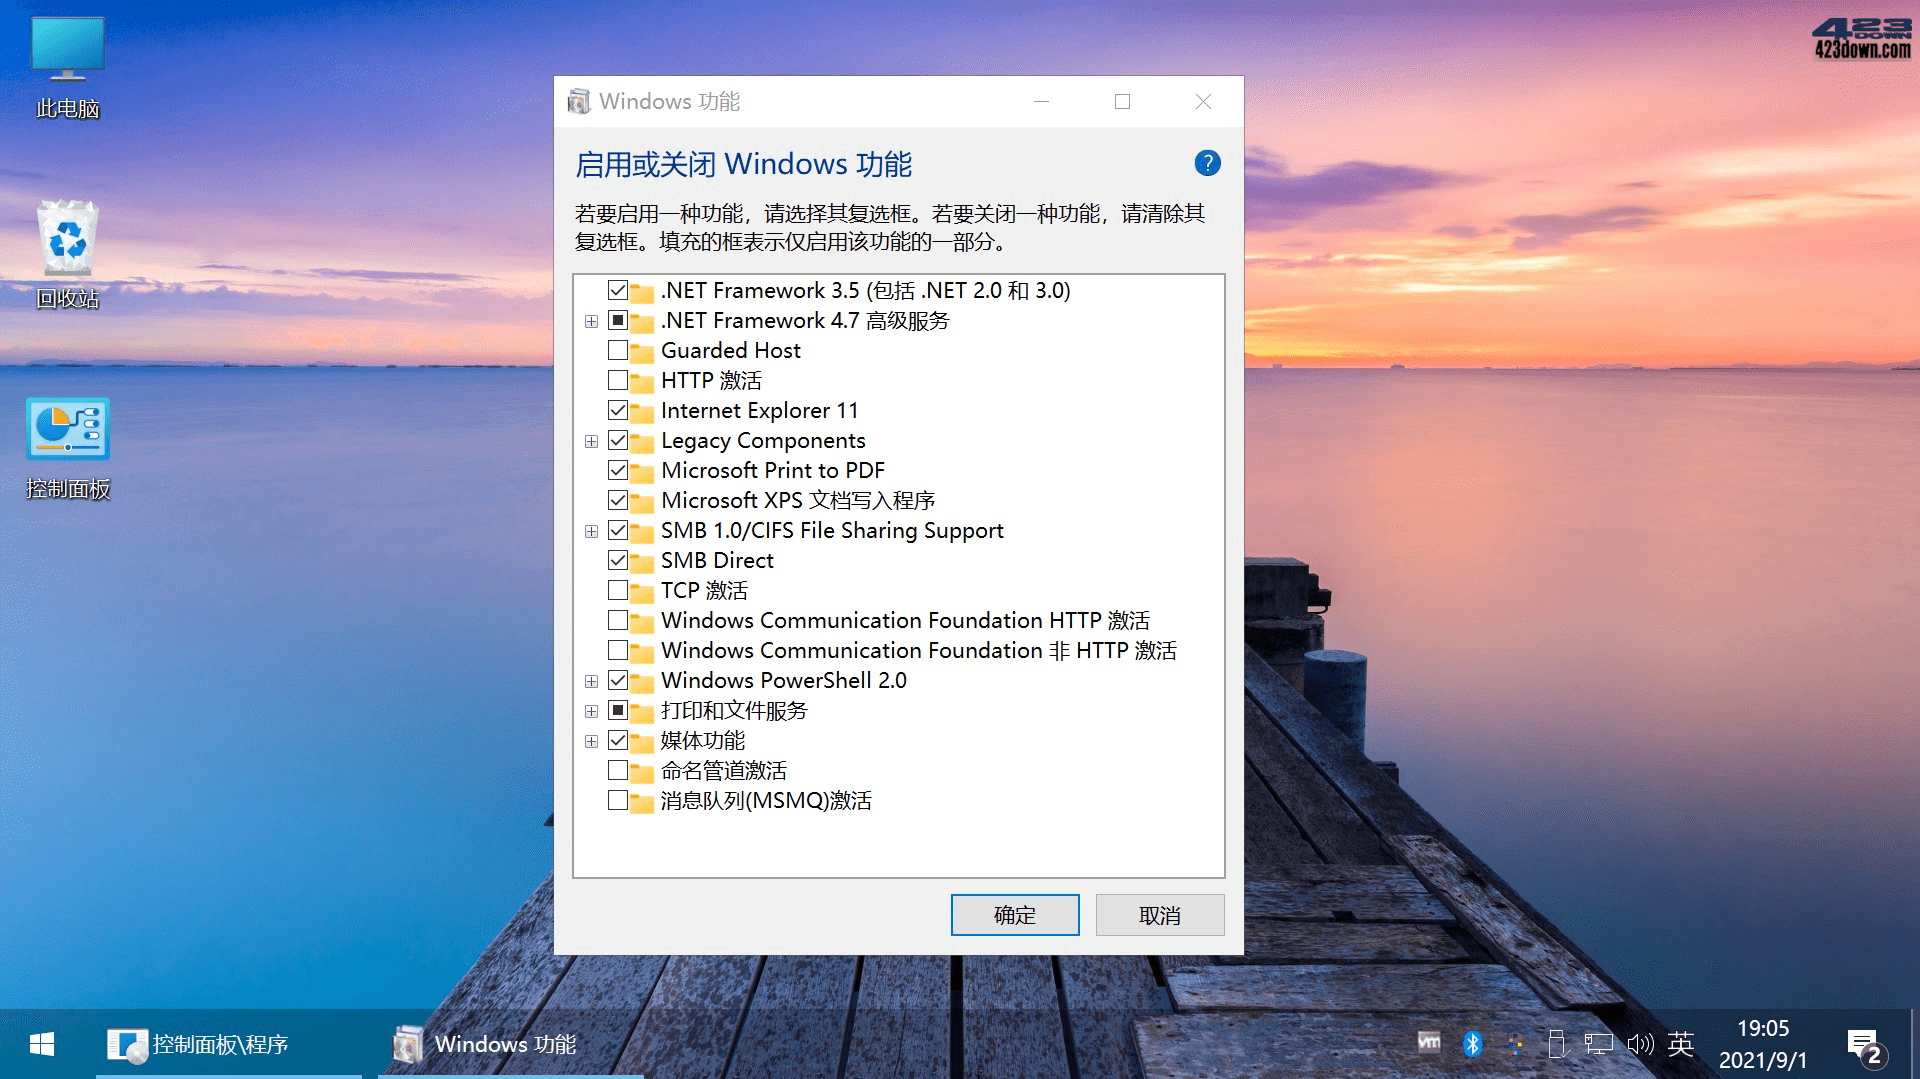 Windows 10 LTSC 2019不忘初心美化精简版